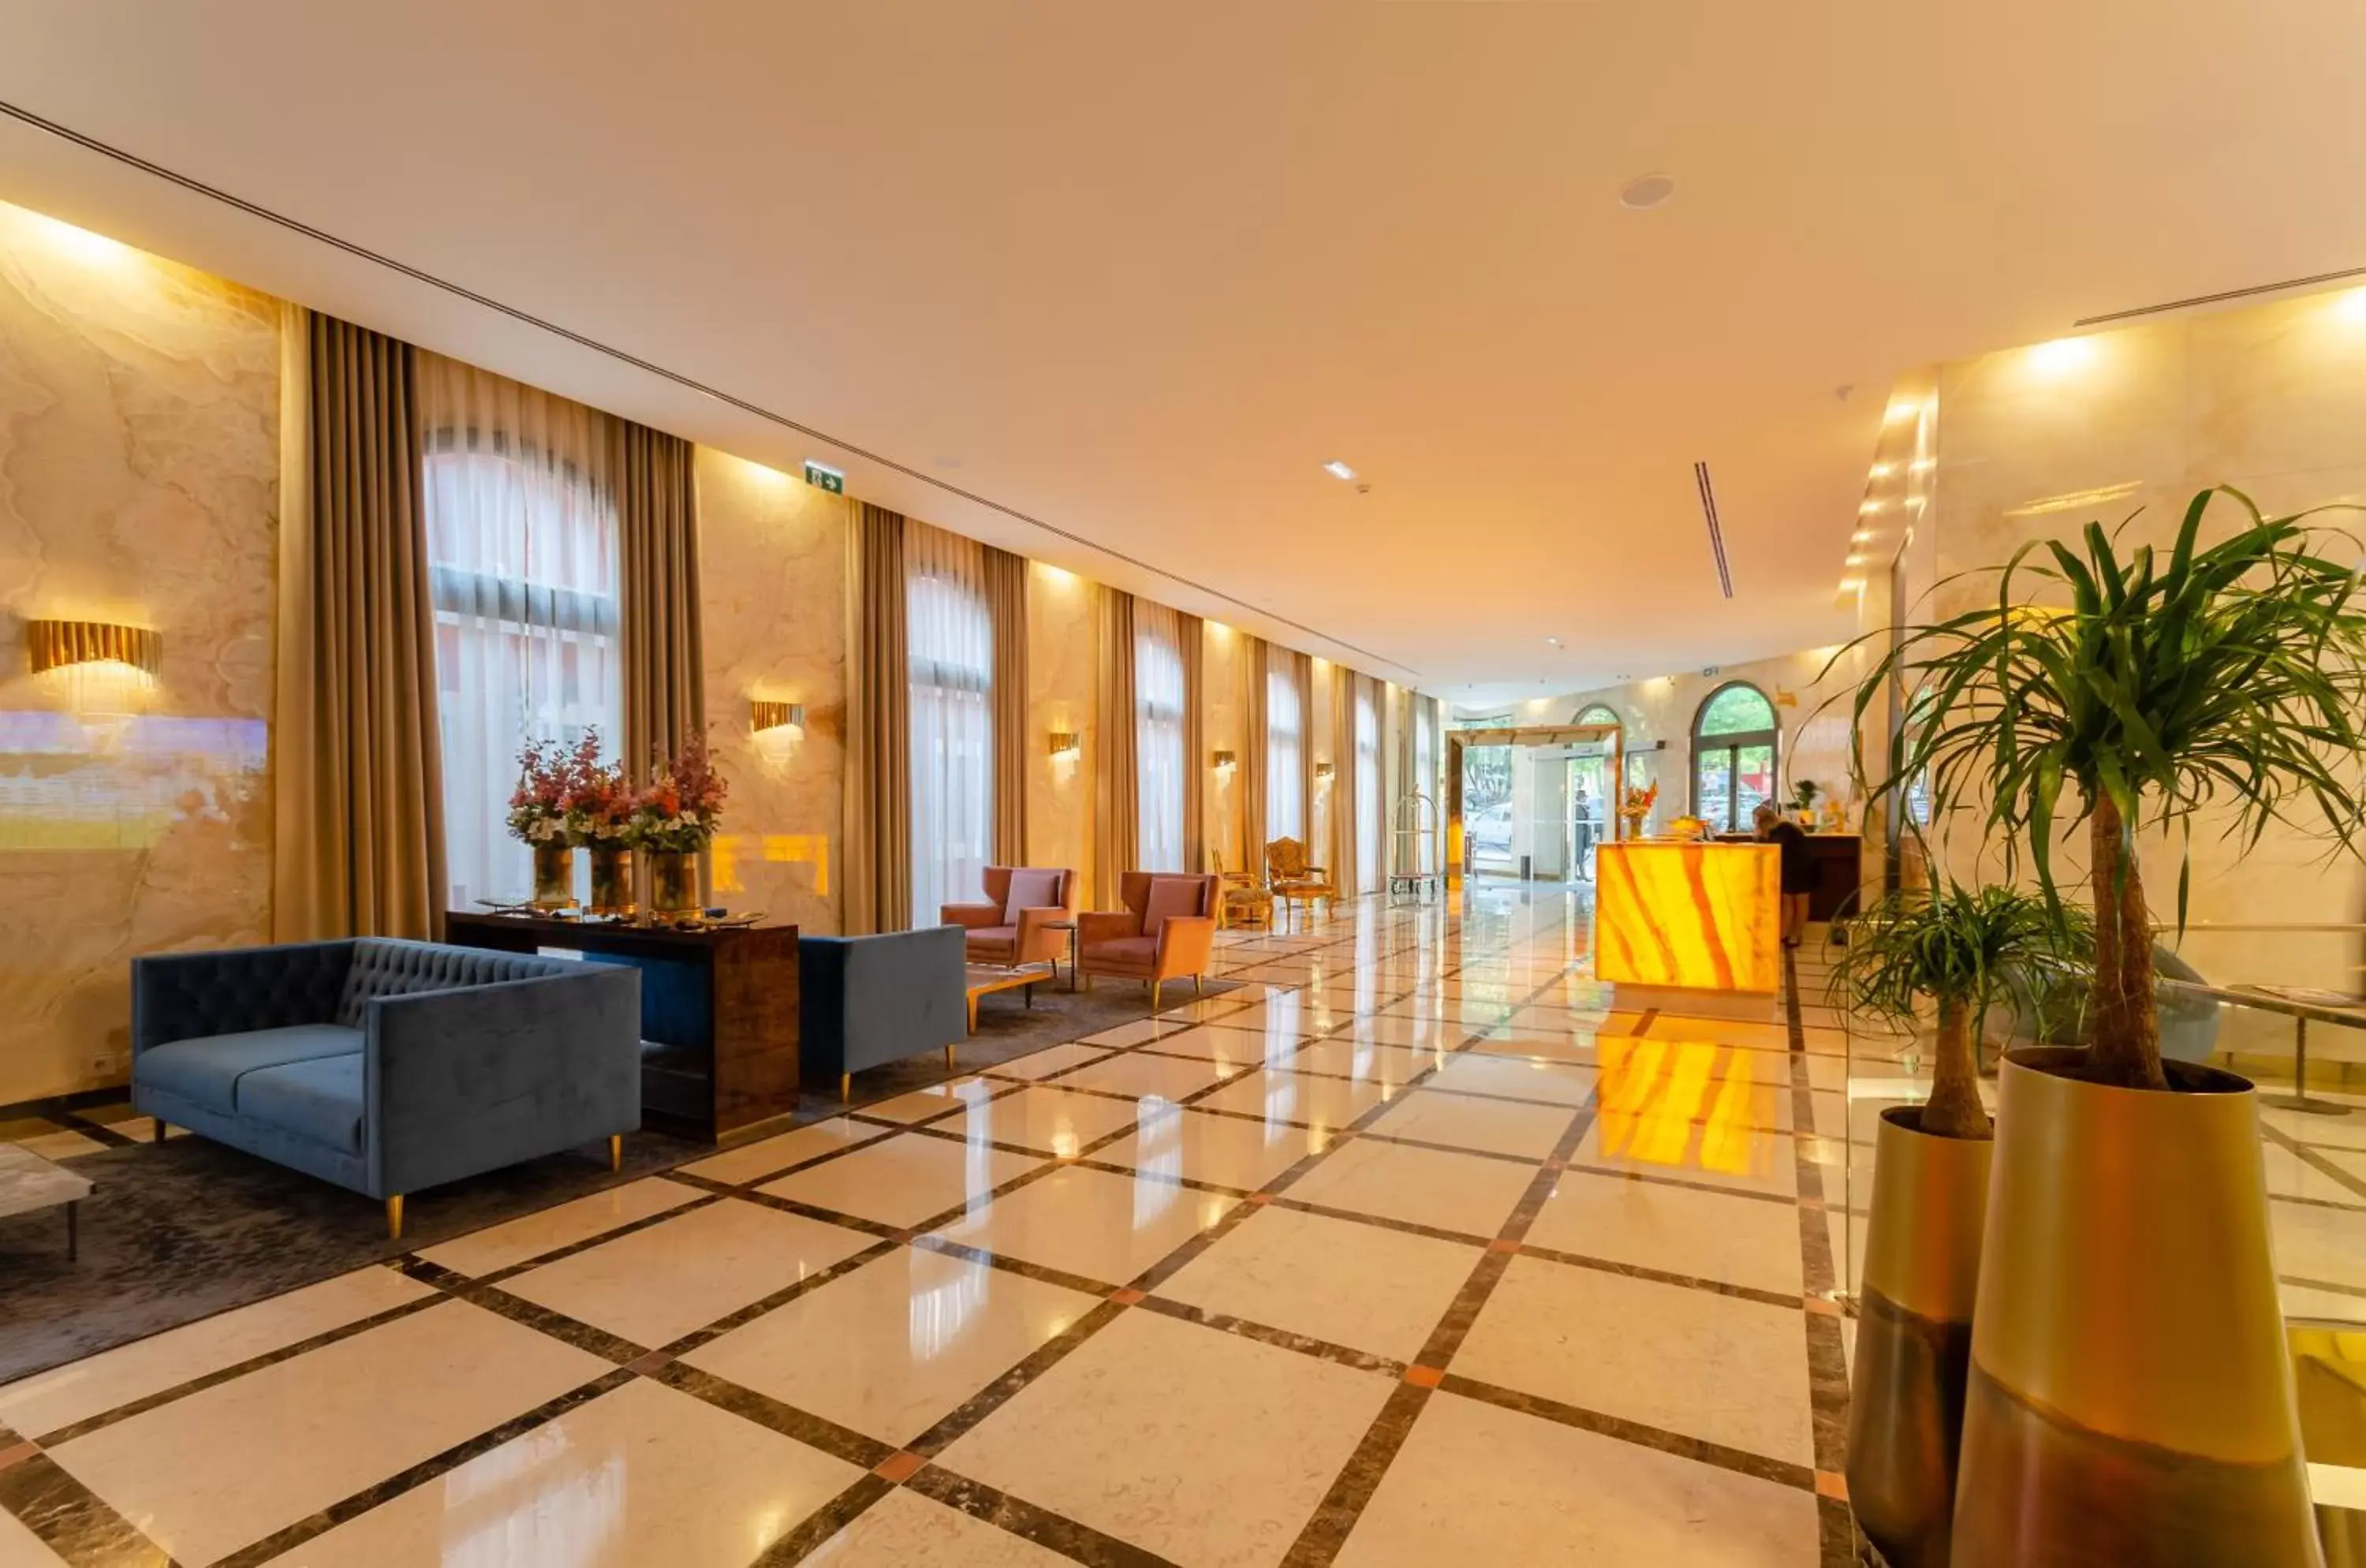 Lobby or reception, Lobby/Reception in TURIM Boulevard Hotel